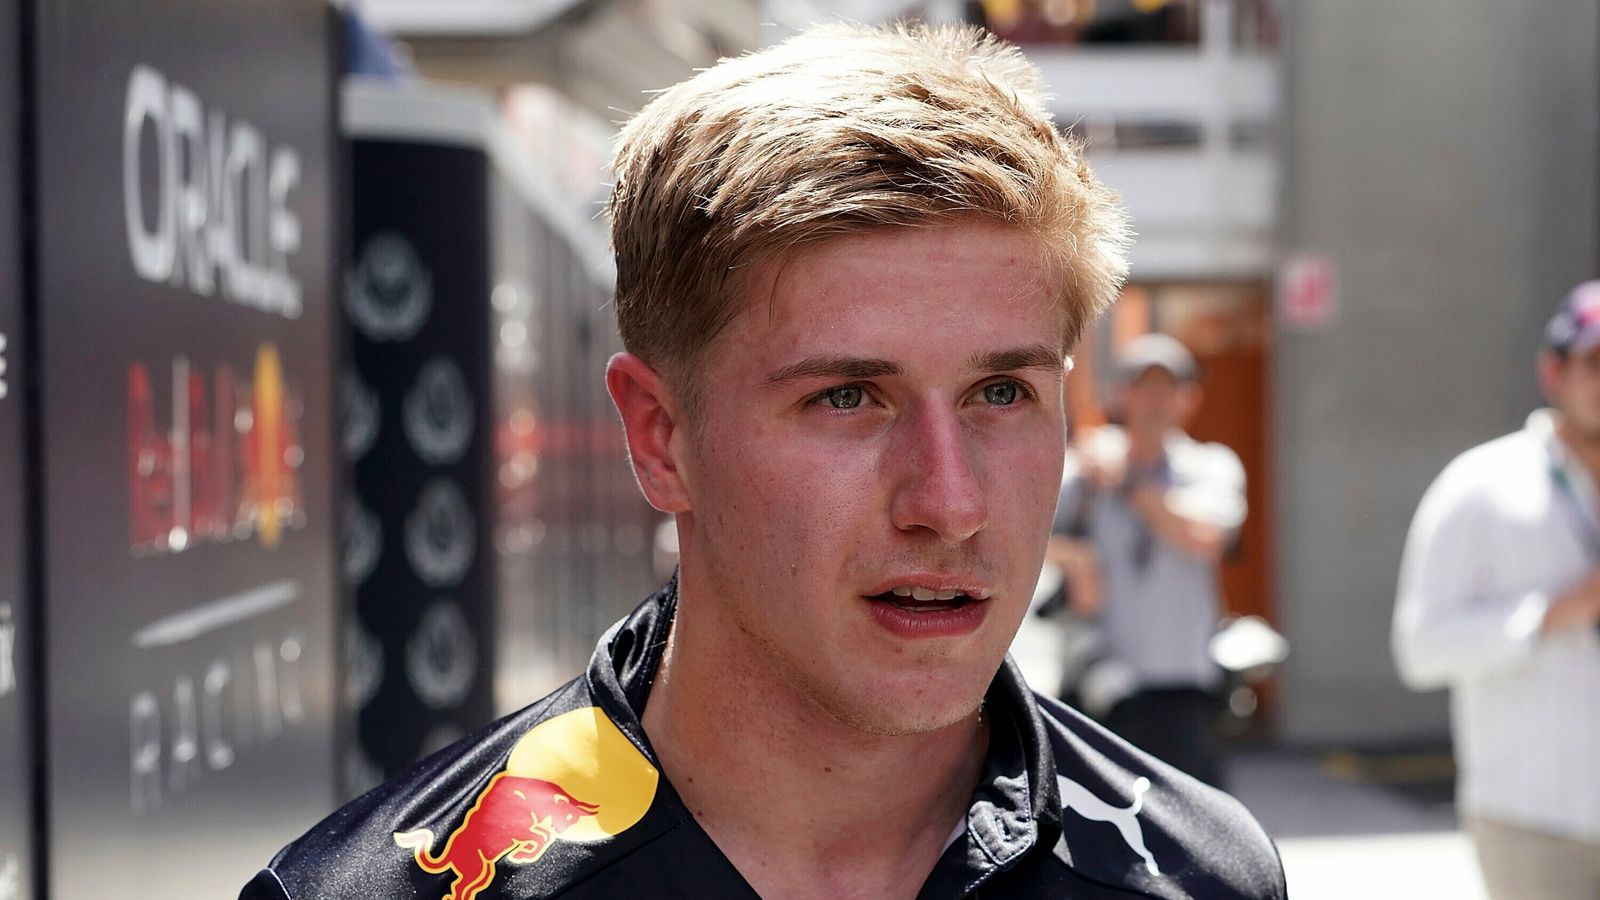 Juri Vips: Red Bull suspend junior driver amid investigation into alleged racist slur